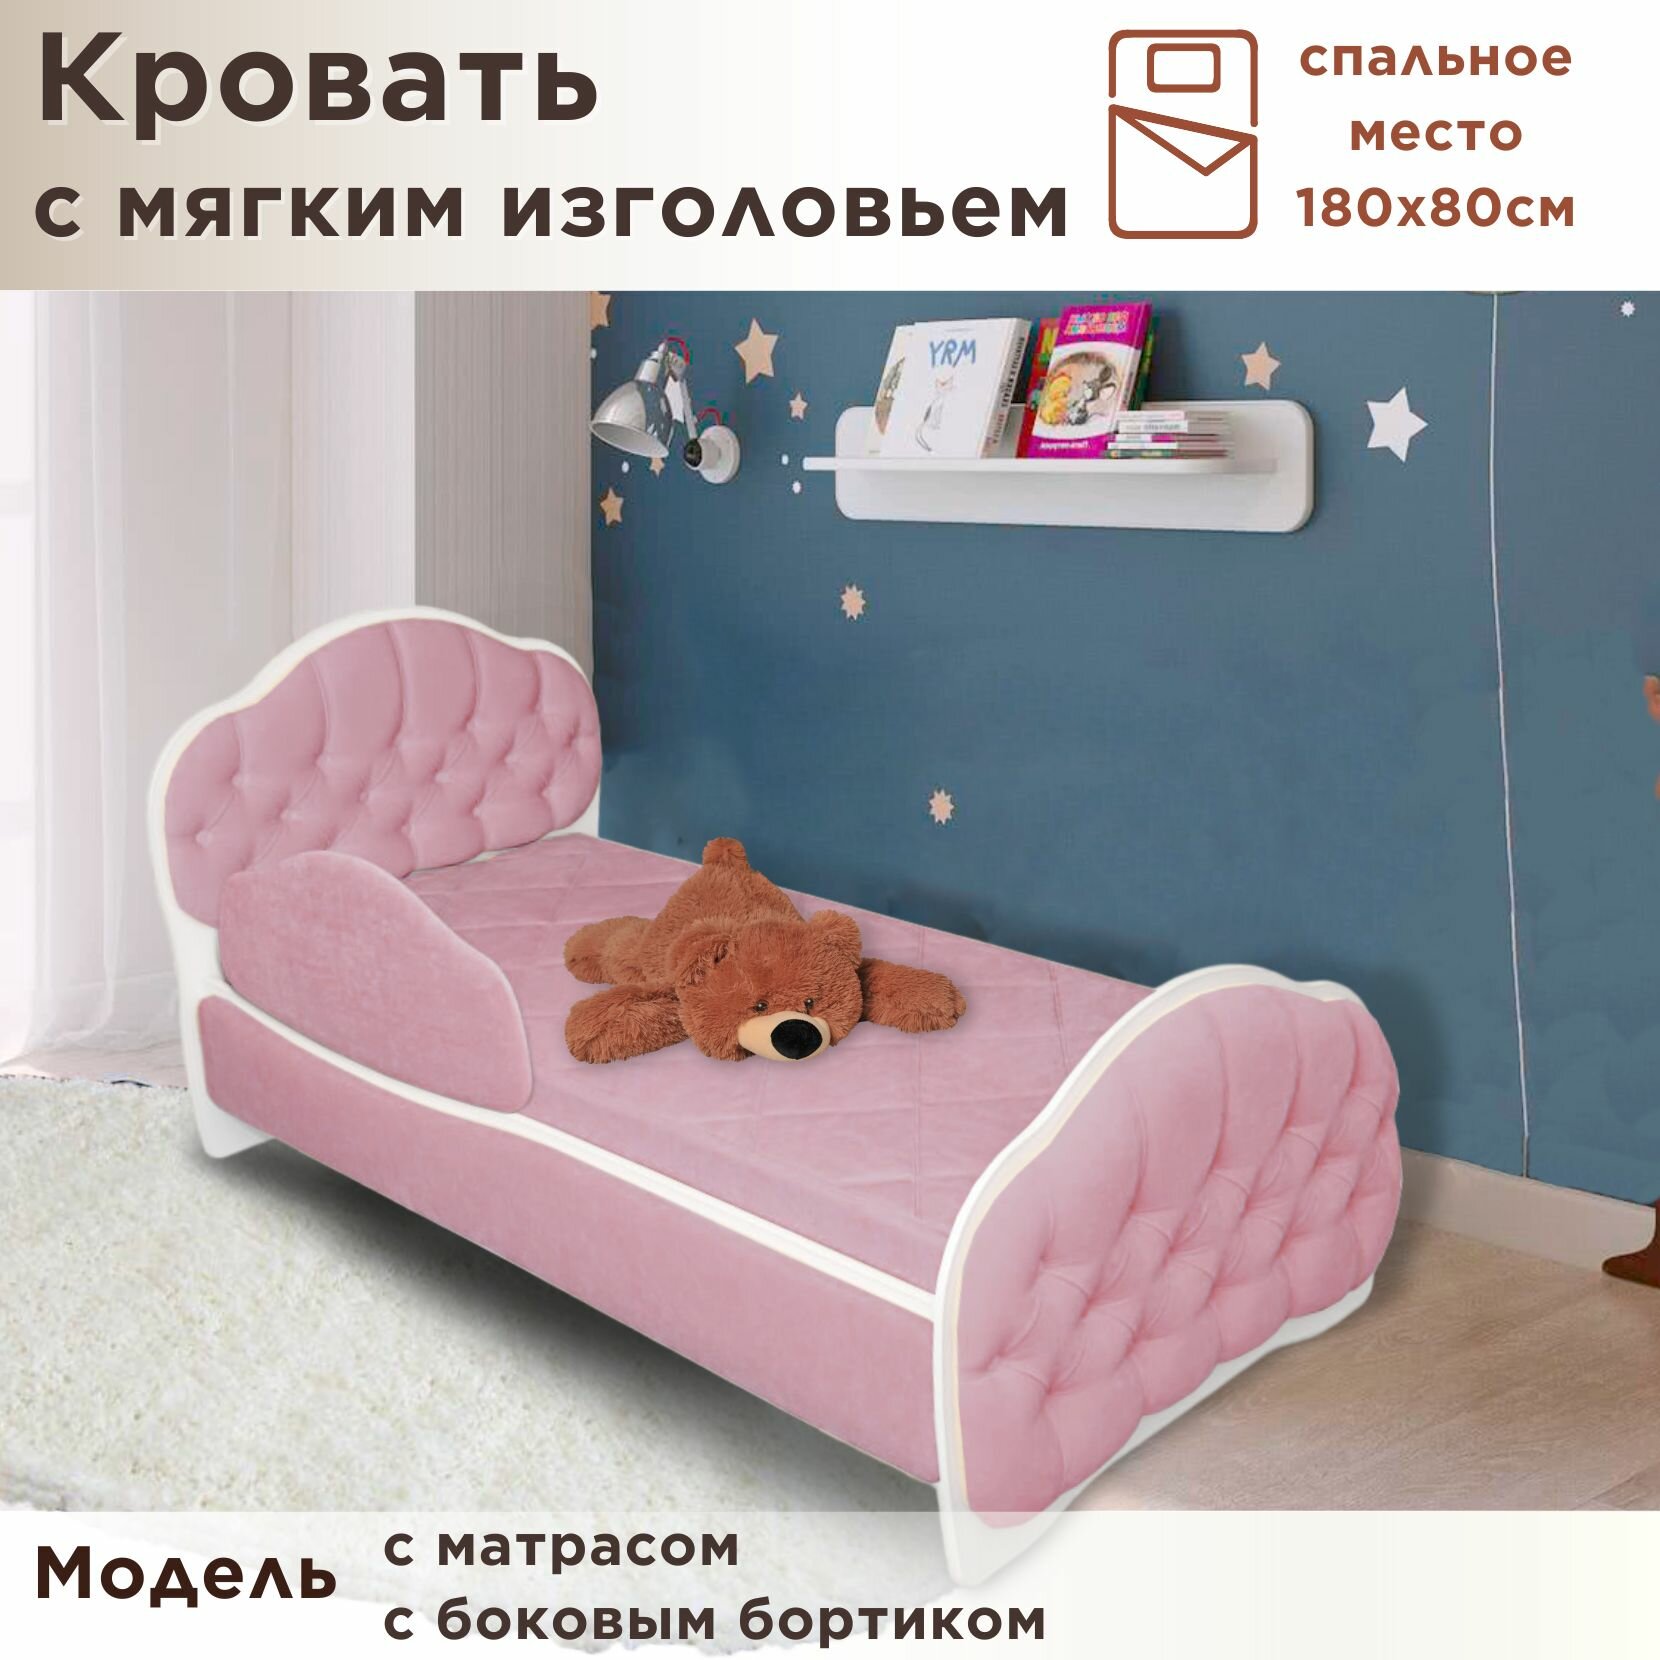 Кровать детская Гармония 180х80 см, Teddy 326, кровать + матрас + бортик